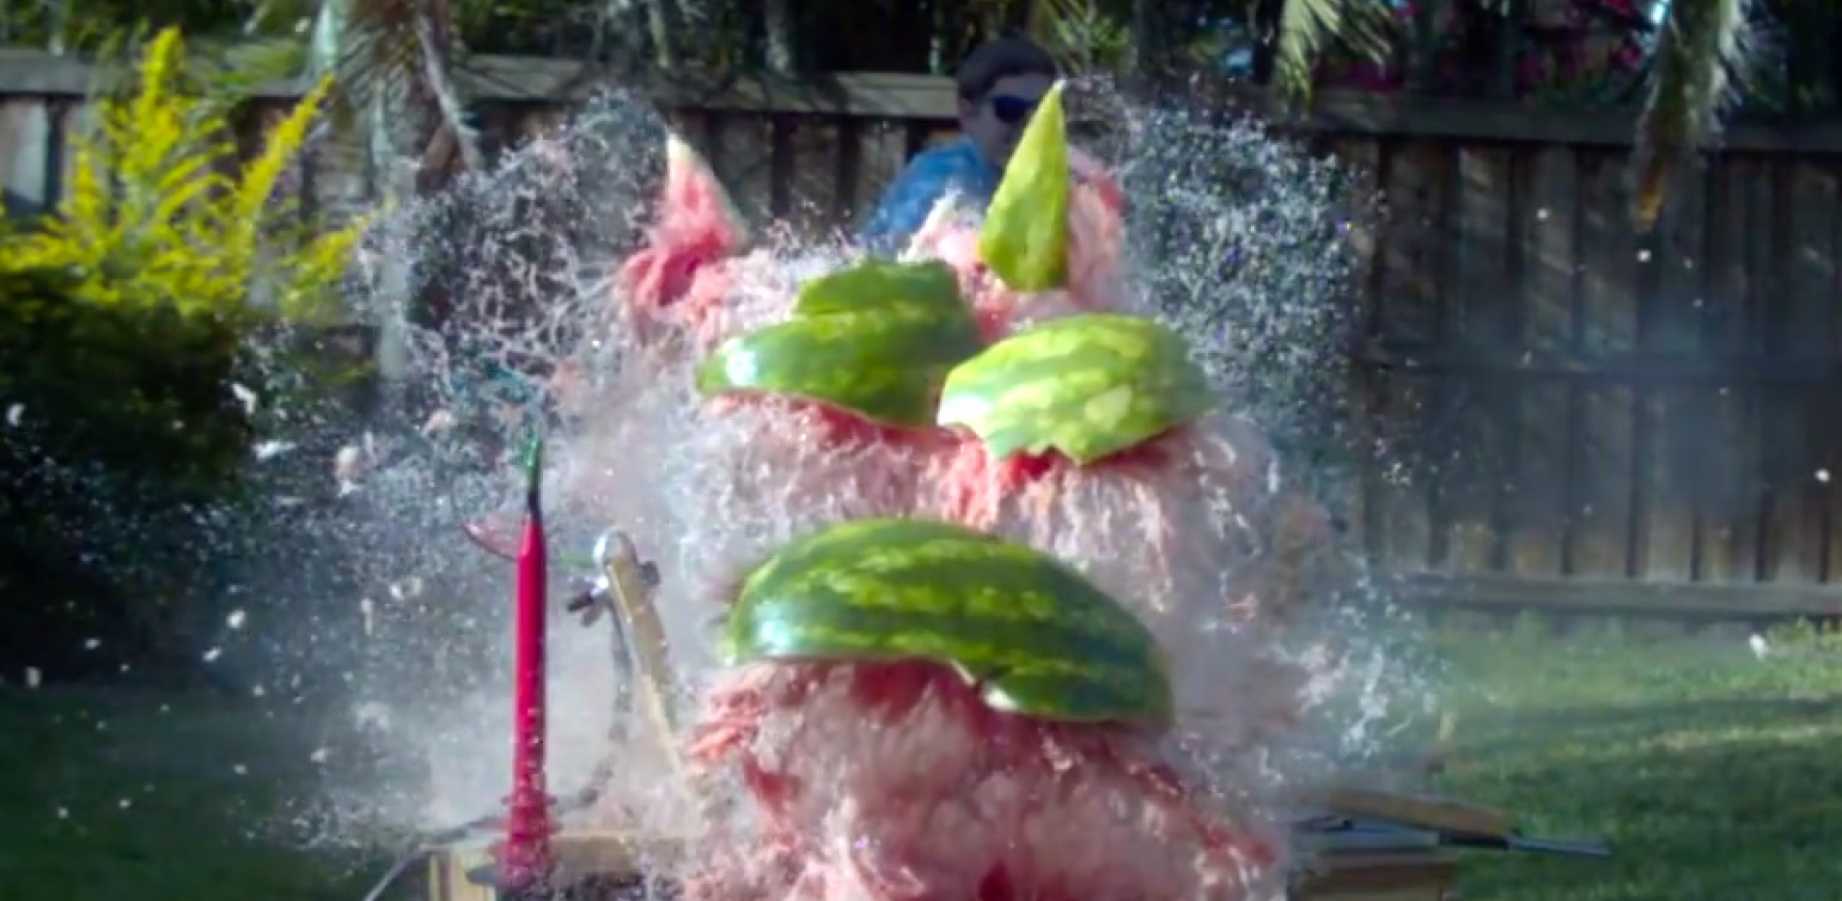 Τι συμβαίνει όταν 20.000 βολτ διαπερνούν ένα καρπούζι; Το video που έγινε viral